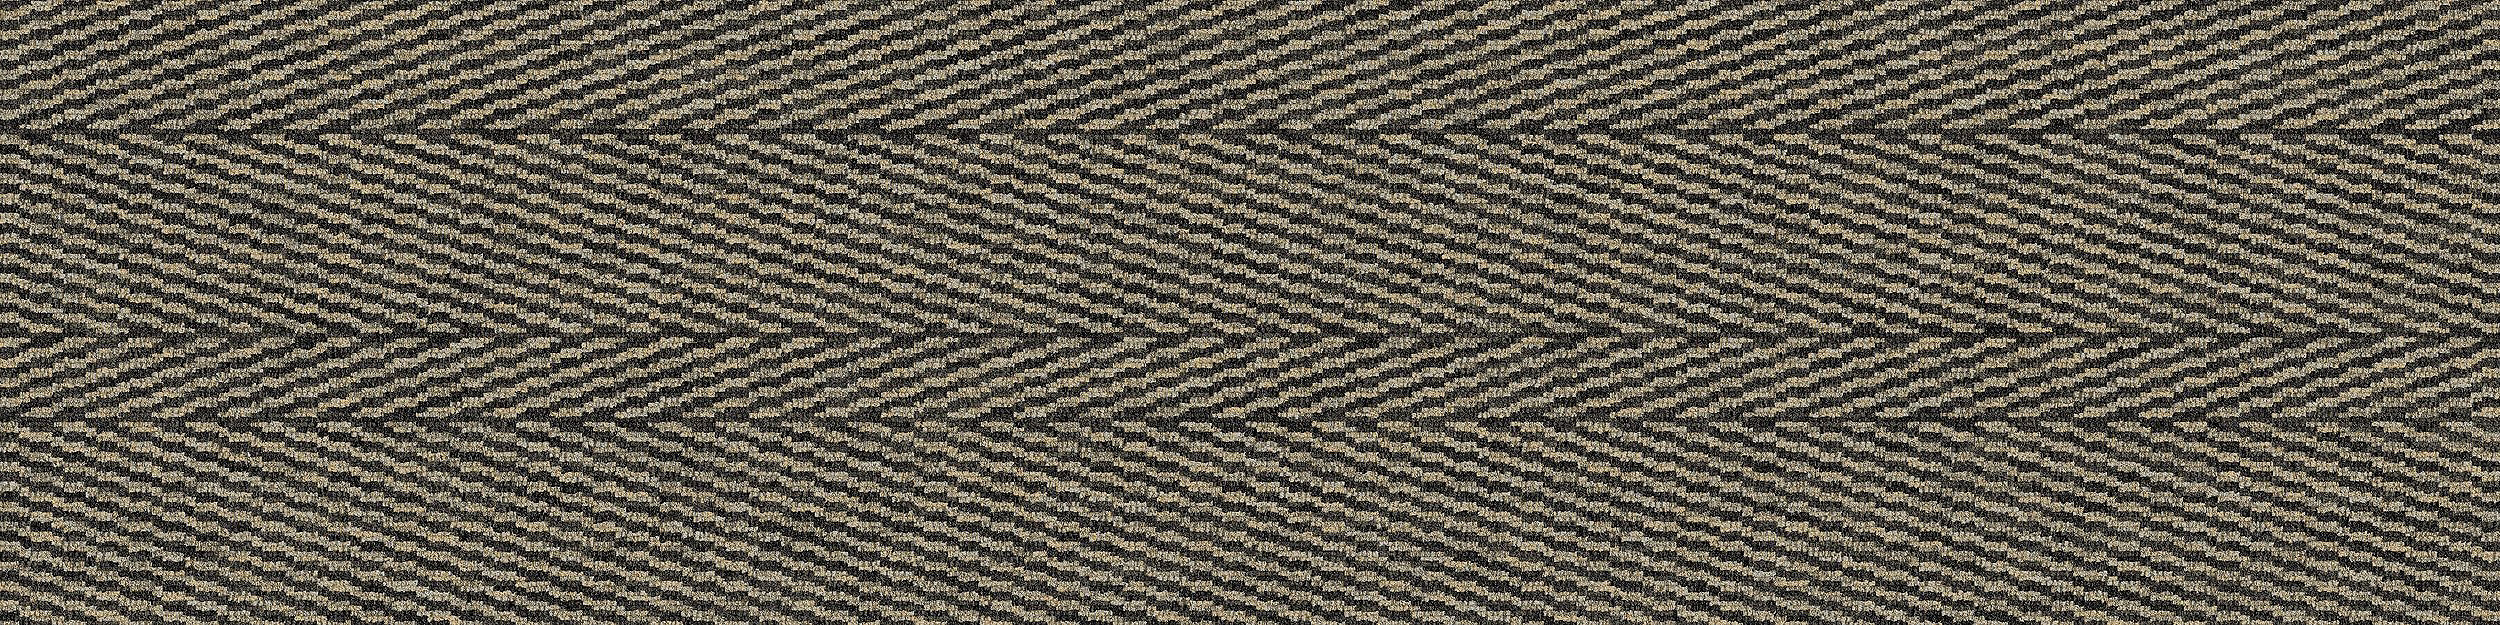 Stitch In Time Carpet Tile In Natural Stitch imagen número 5